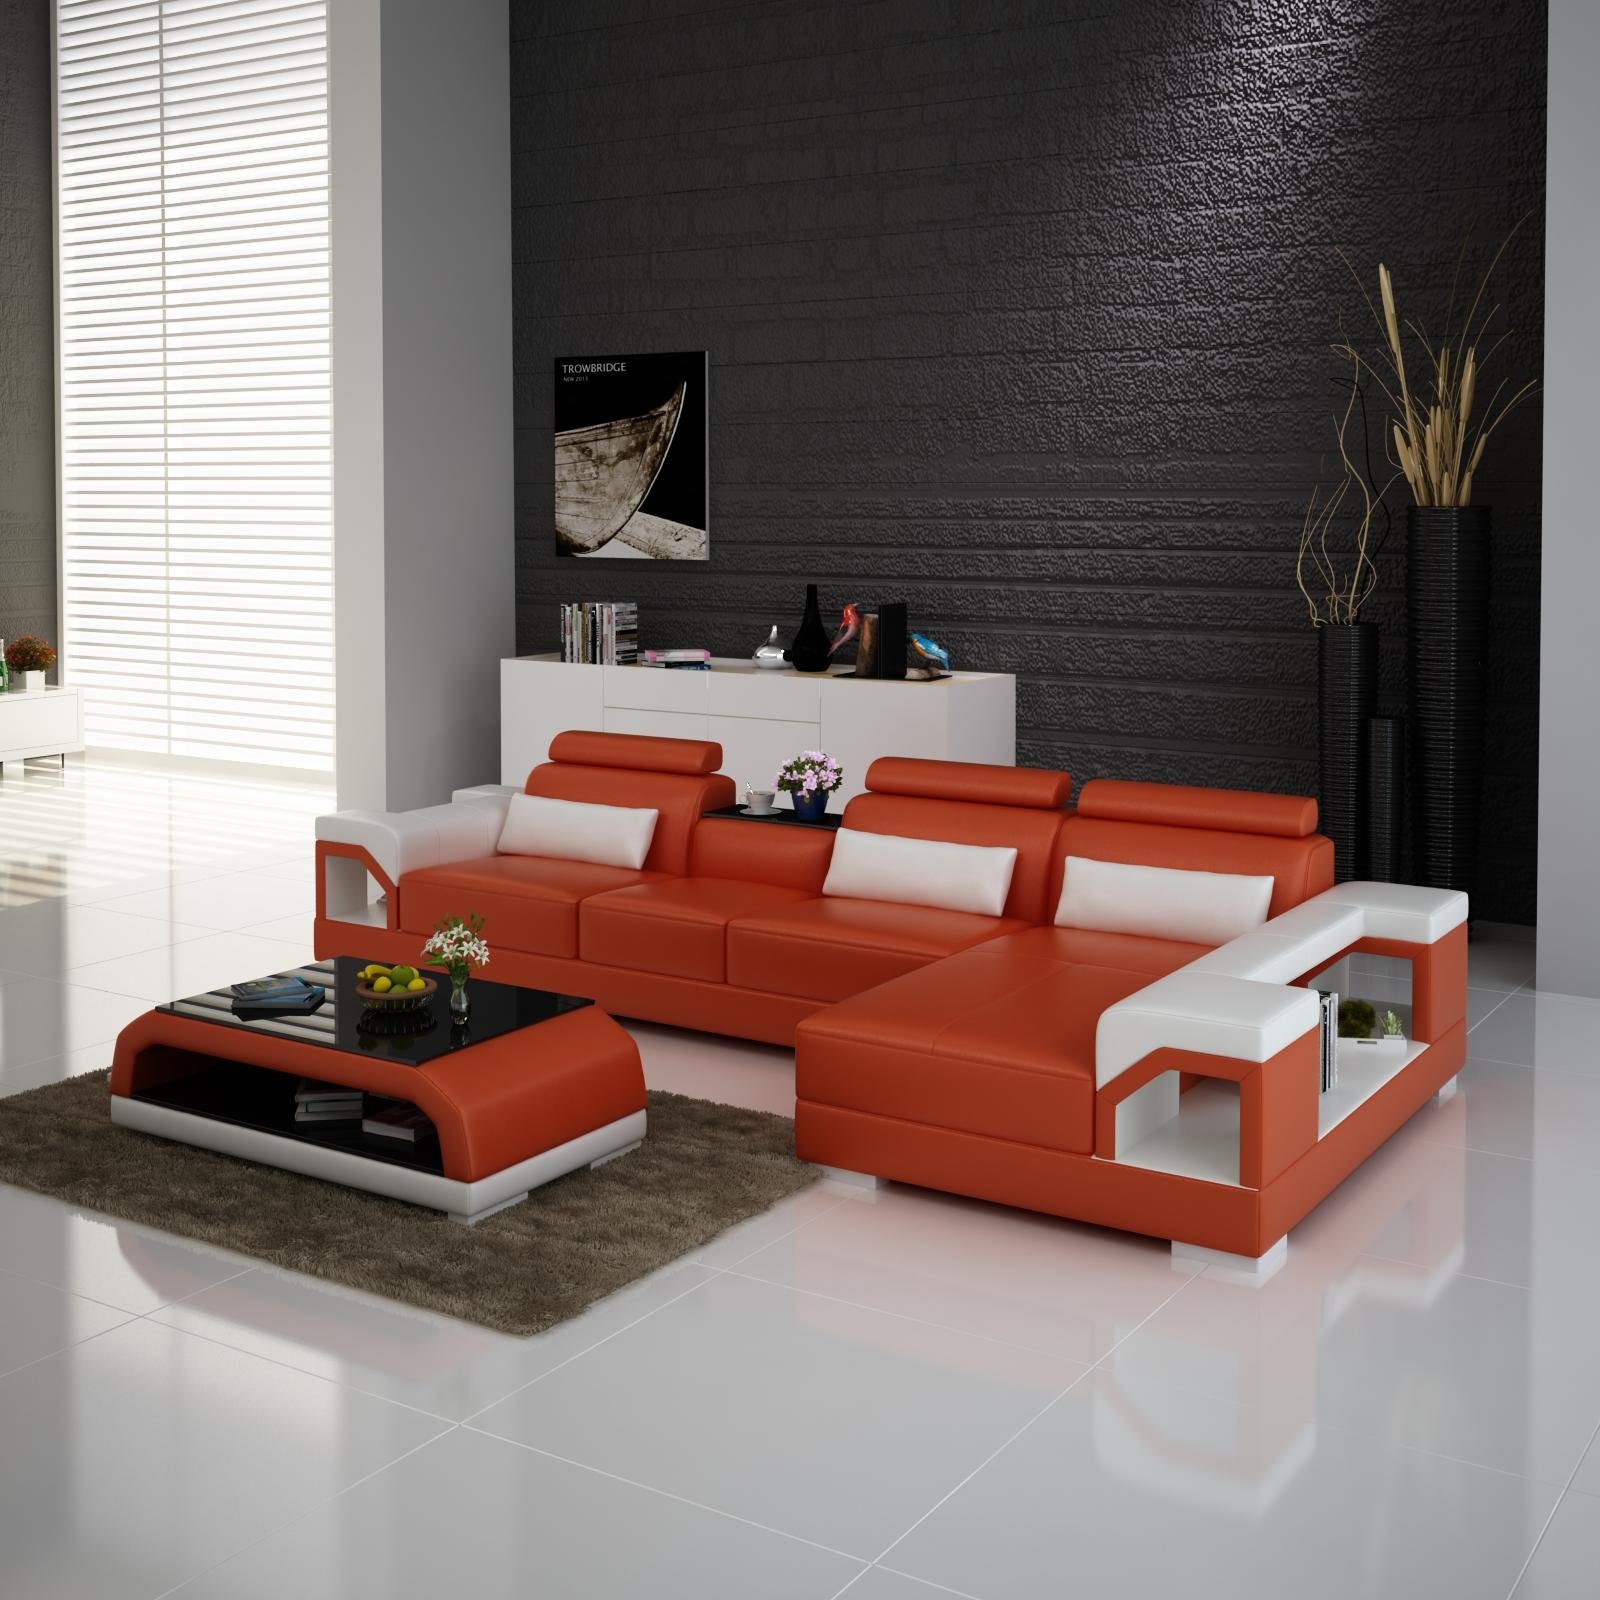 JVmoebel Ecksofa, Couch Ecksofa Leder Wohnlandschaft Garnitur Design Modern Orange/Weiß